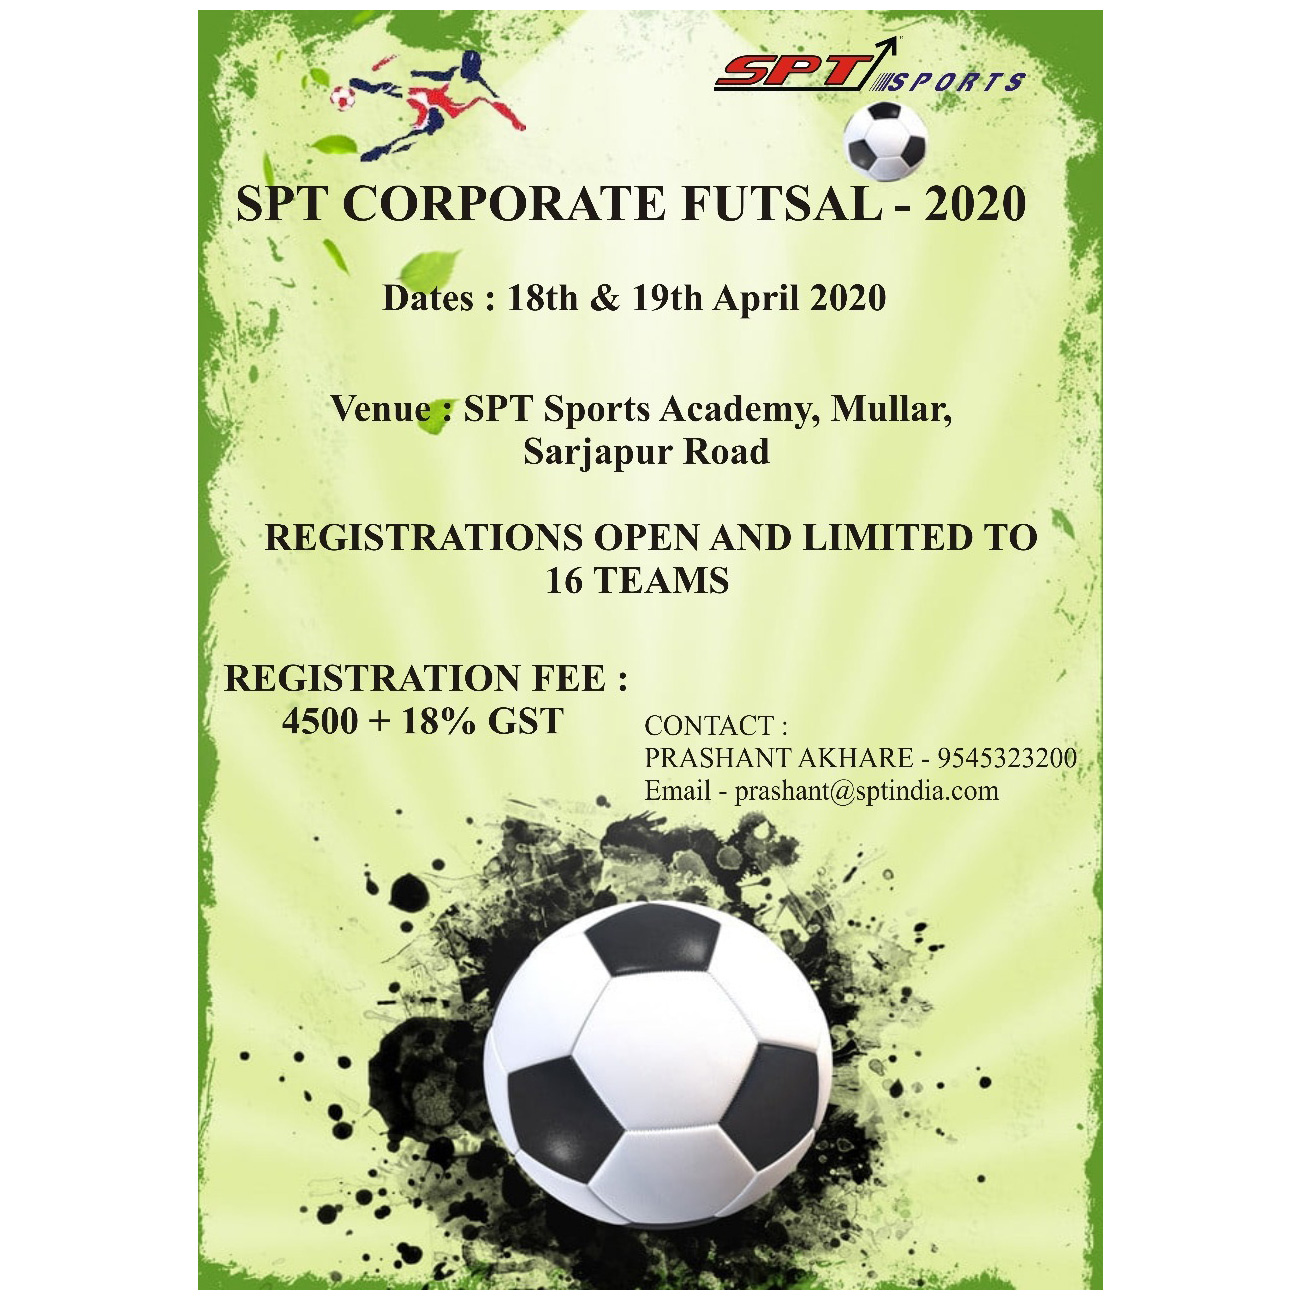 Corporate Futsal 2020